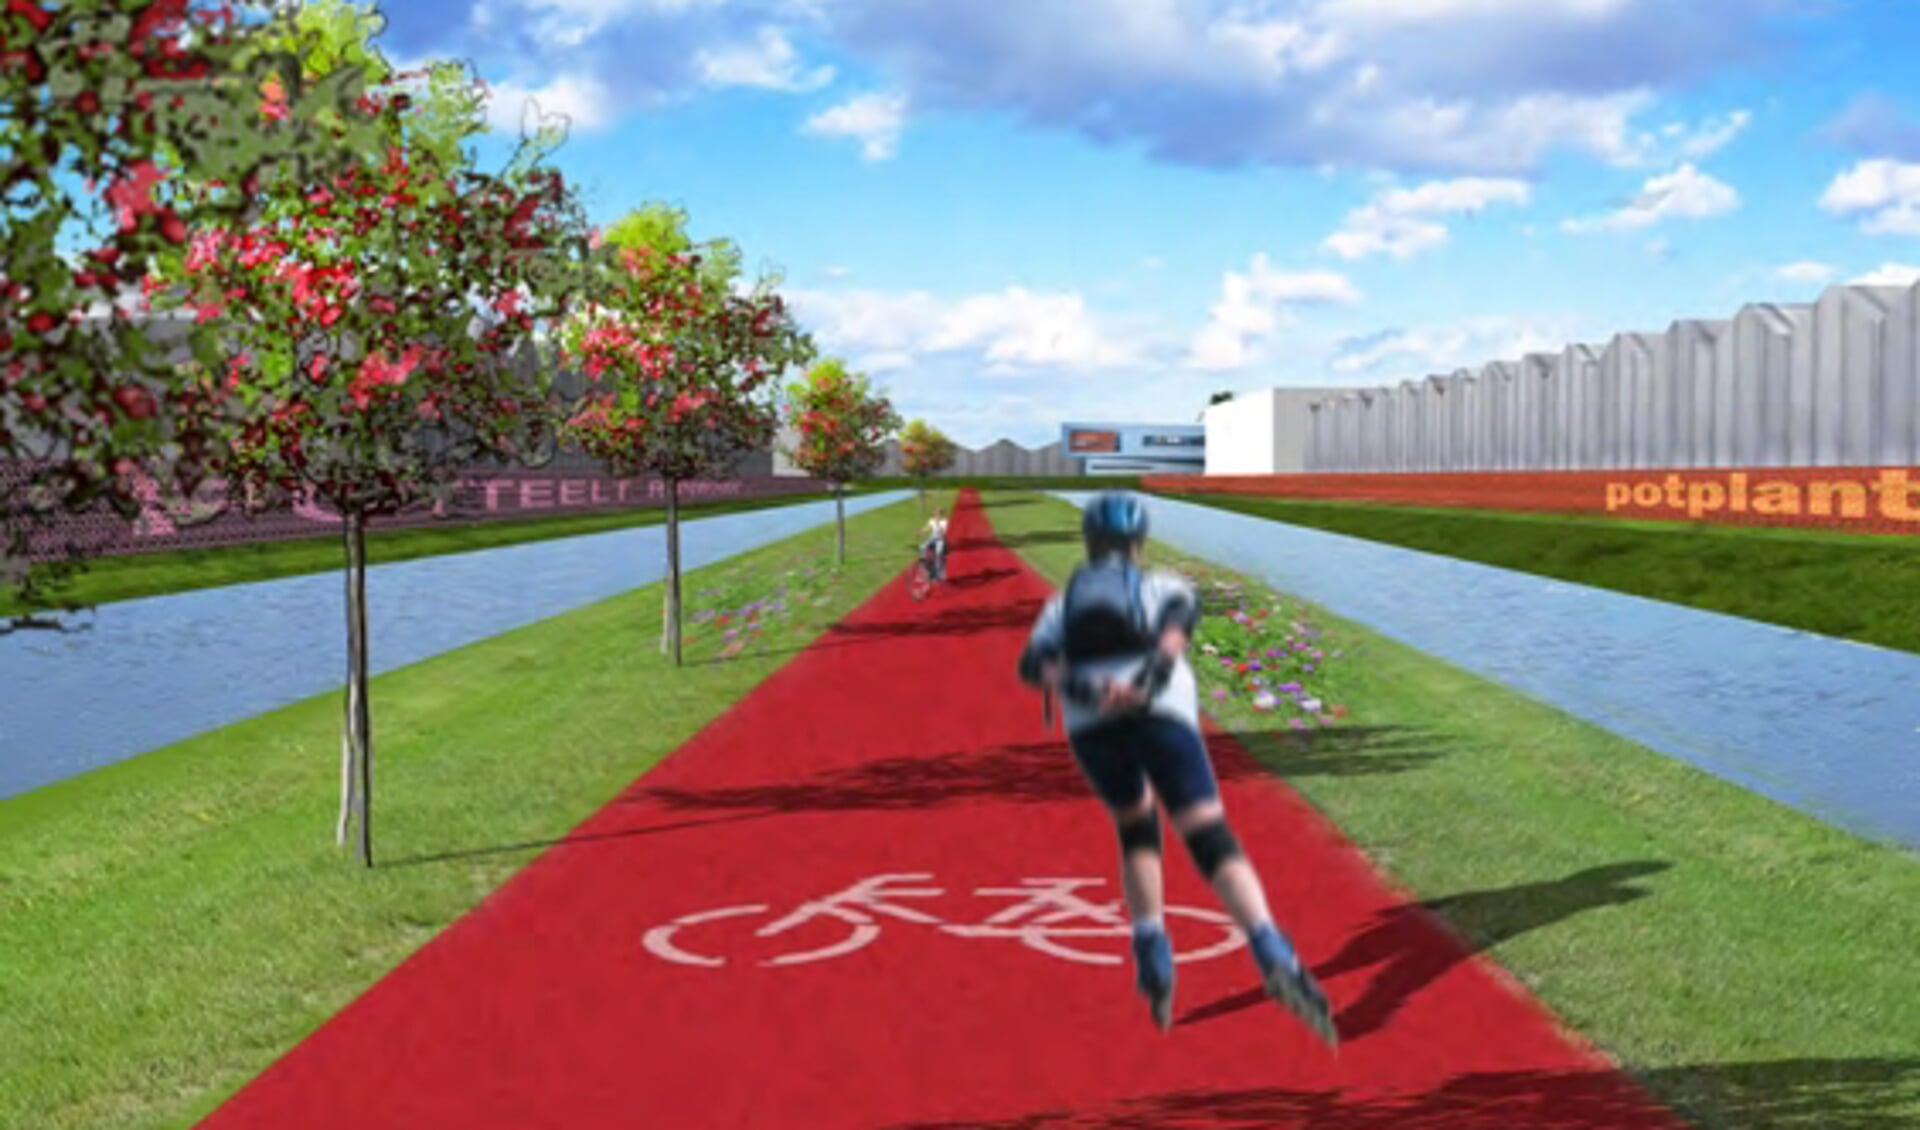 De voorstelling van het fietspad in het beeldkwaliteitsplan uit 2010 